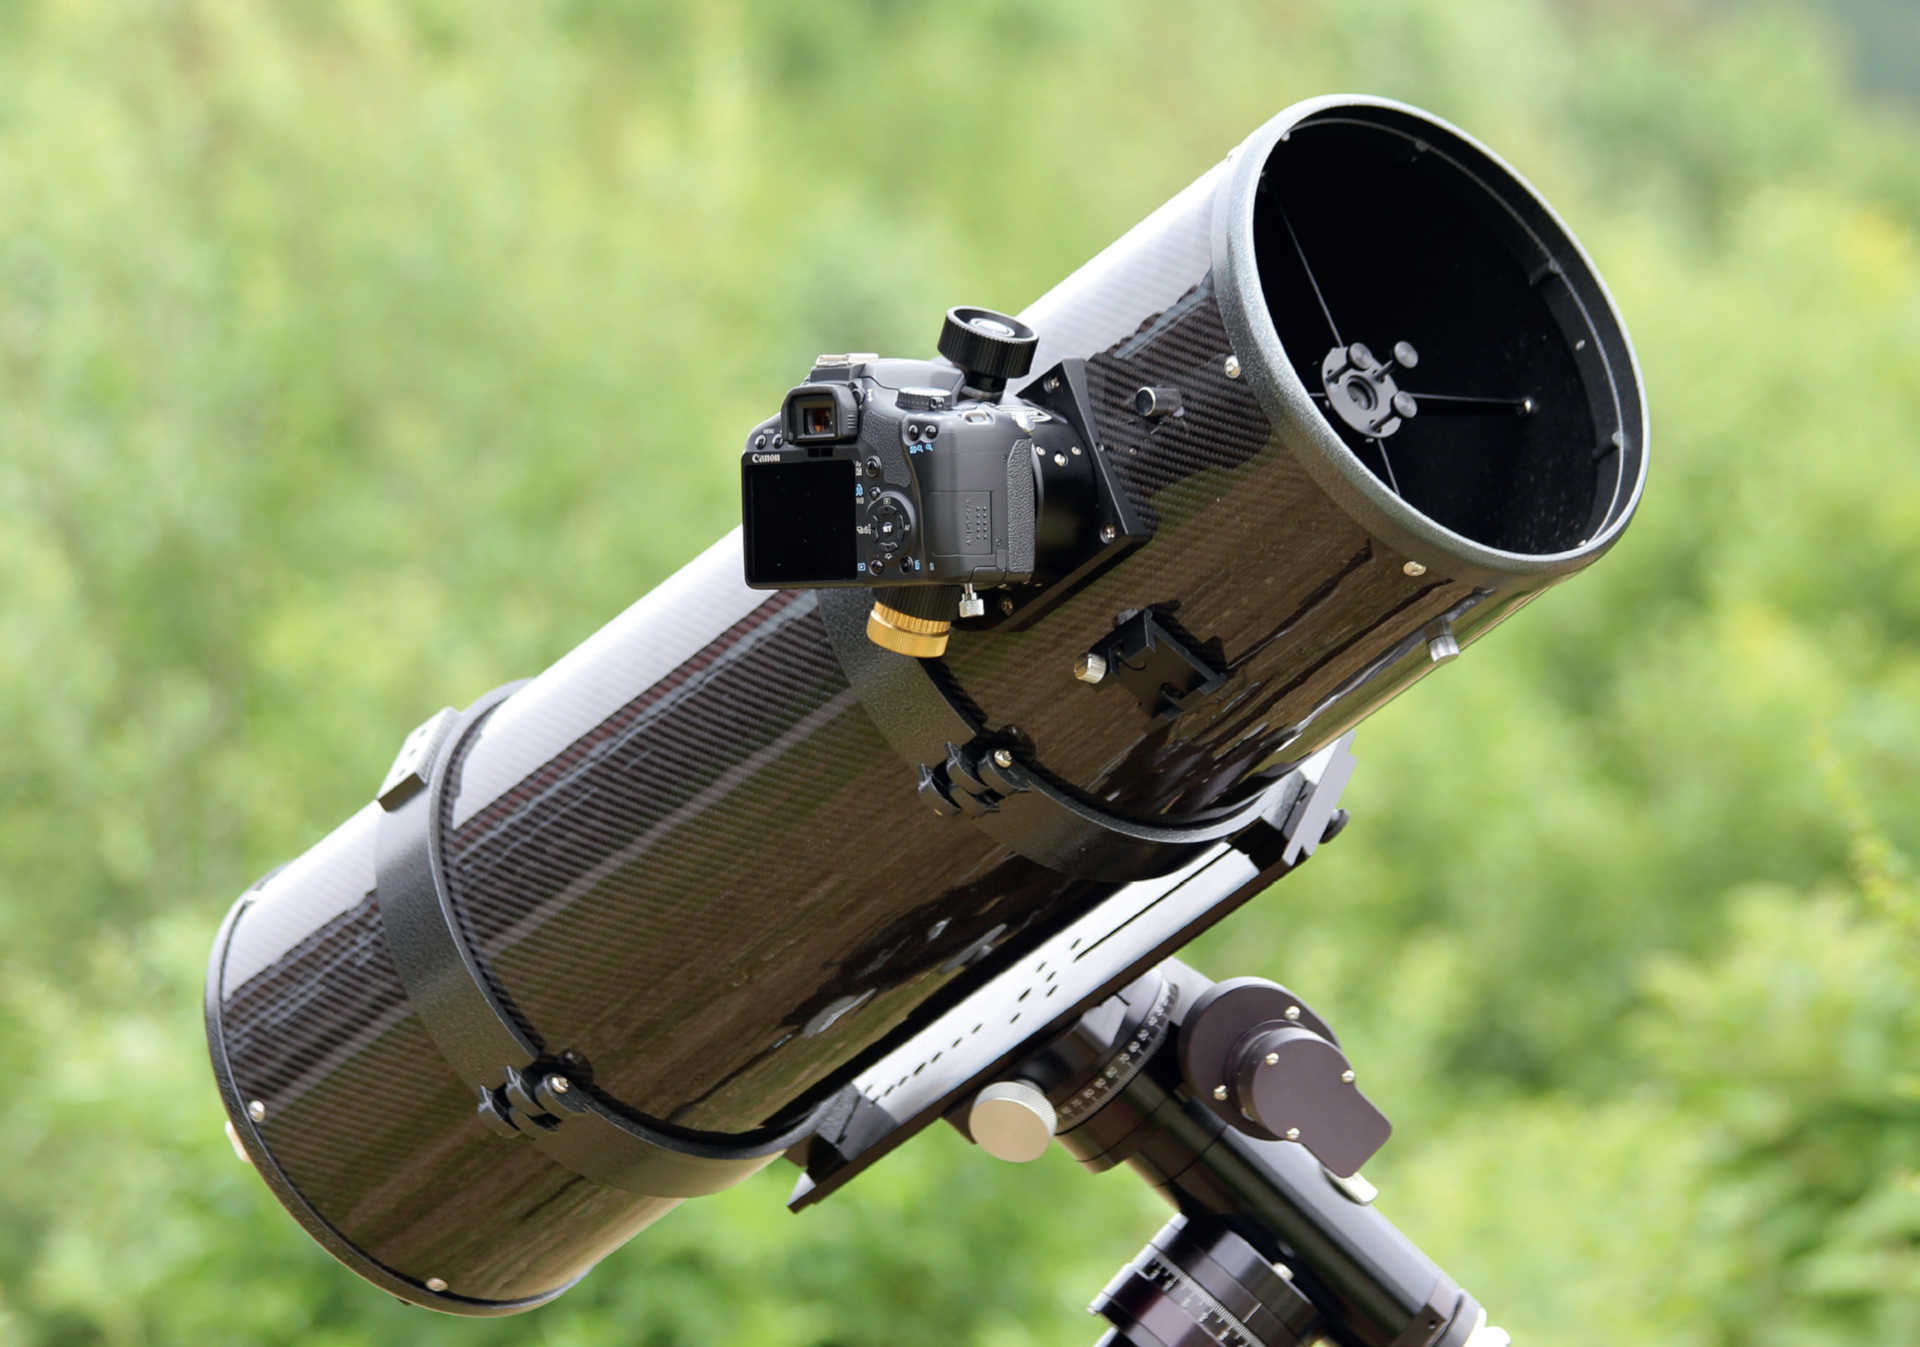 Un reflex numérique peut être raccordé à de nombreux instruments amateurs, moyennant peu de frais. On utilise ici un appareil bon marché avec capteur APS-C placé sur un télescope de Newton.